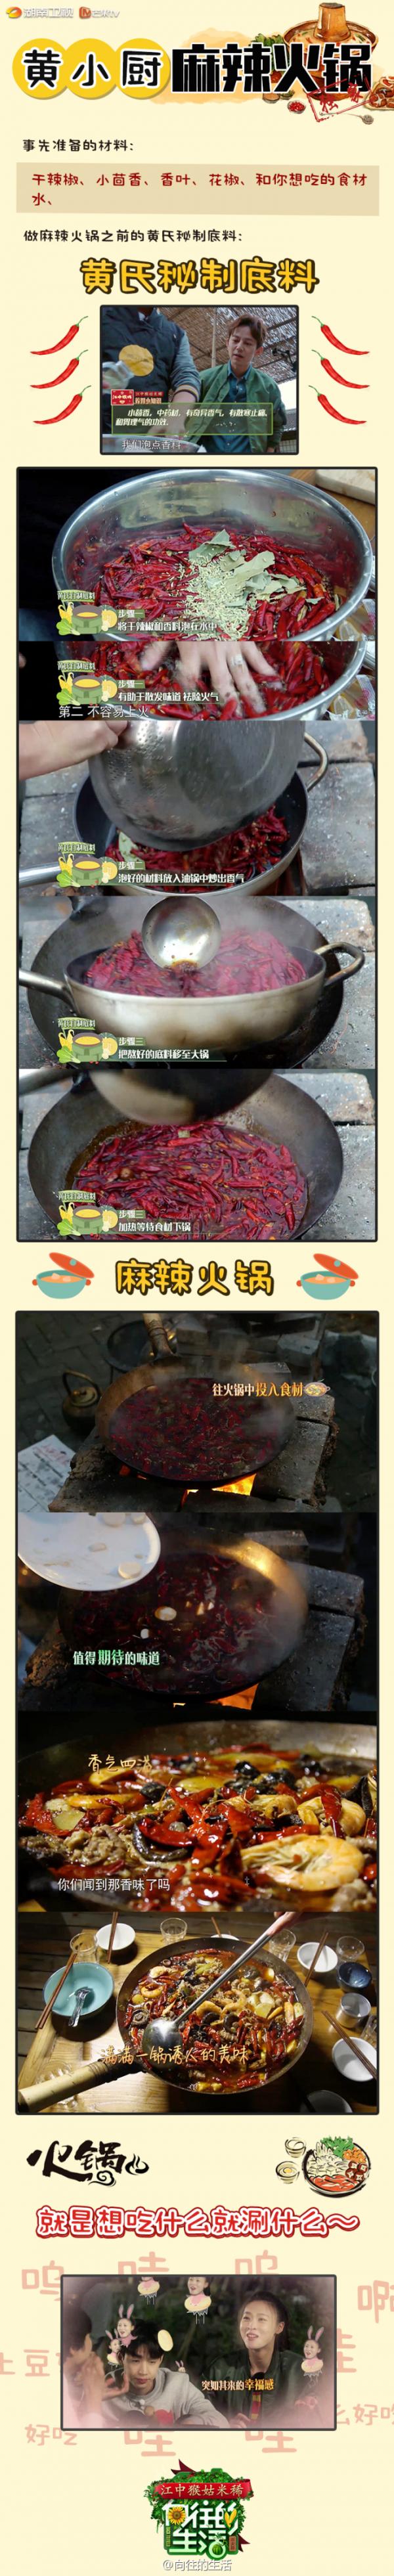 向往的生活中国女排惠若琪丁霞那期黄磊麻辣火锅和烤串菜谱是什么